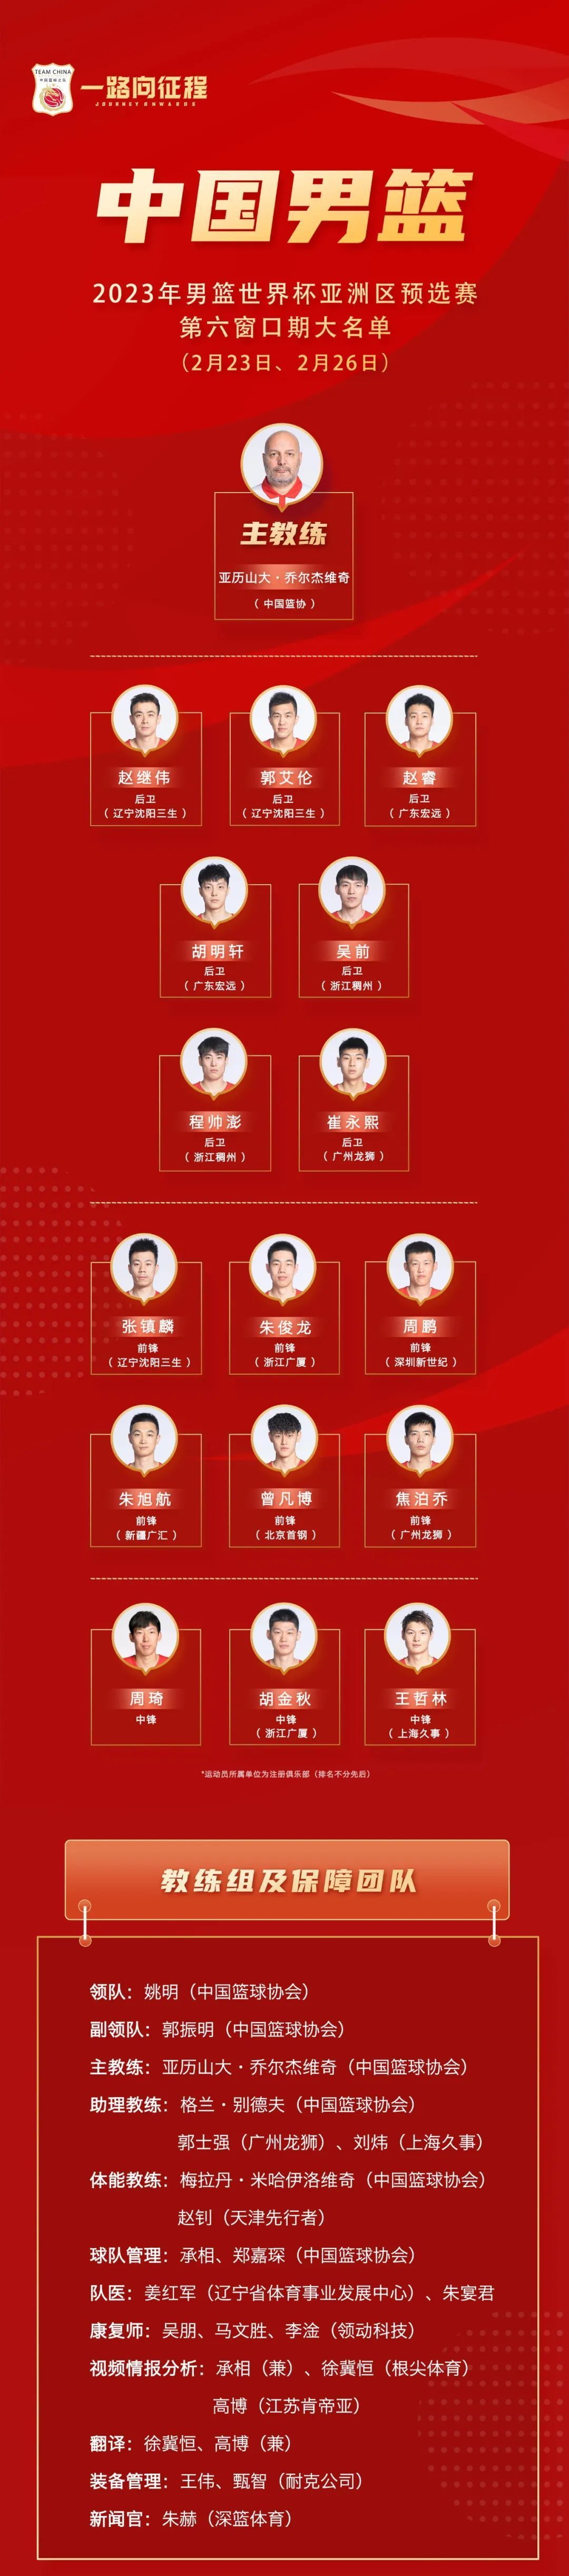 中国男篮2023世预赛第六窗口期大名单公布